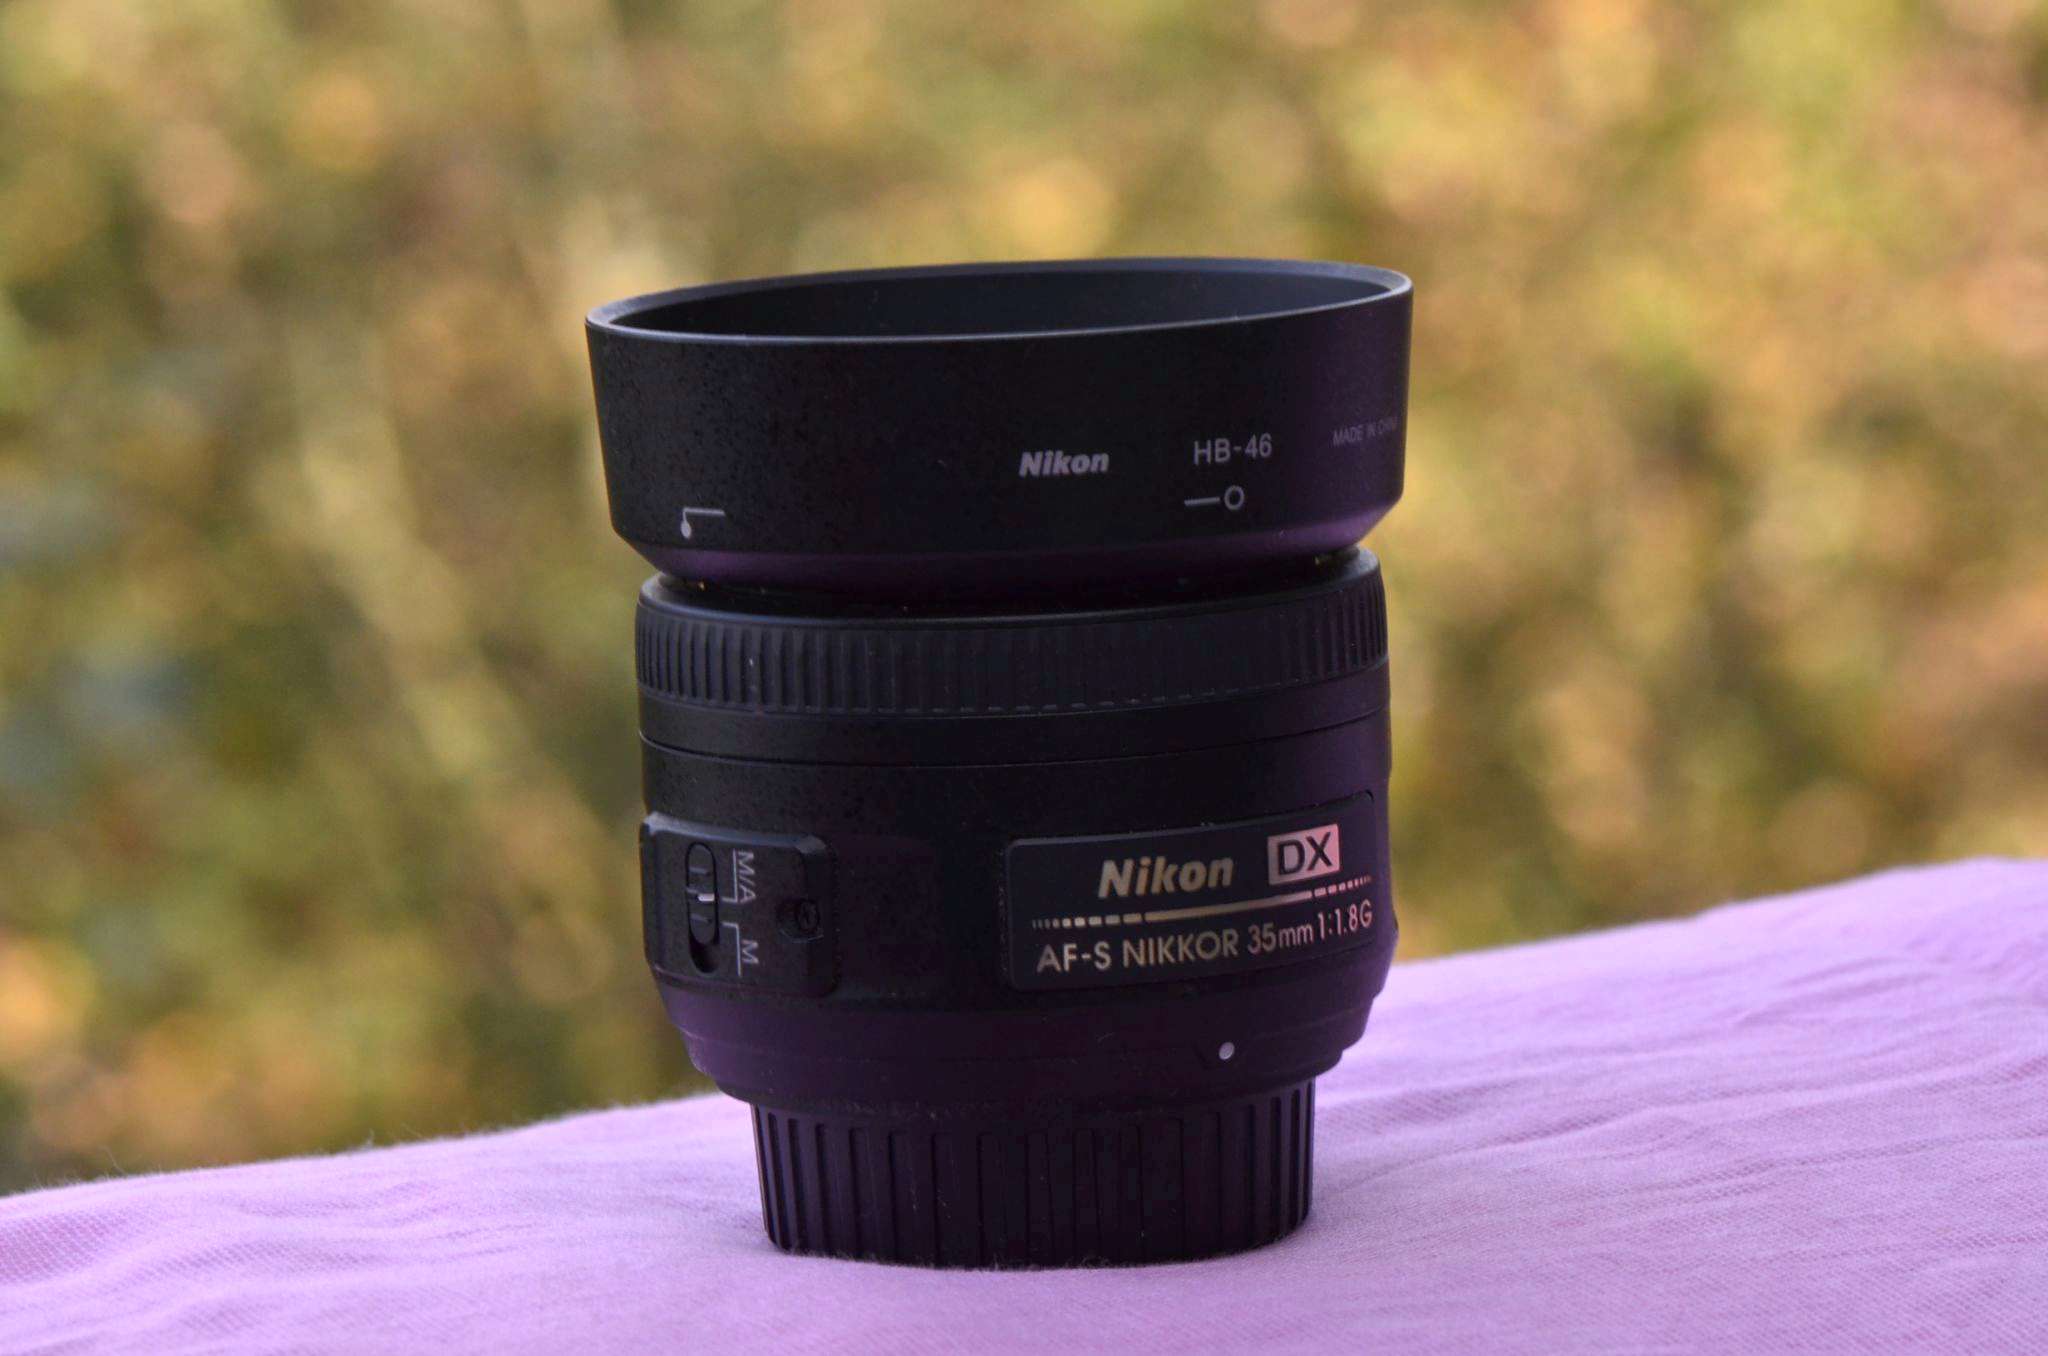 Nikon 35mm f/1.8g af-s DX Nikkor